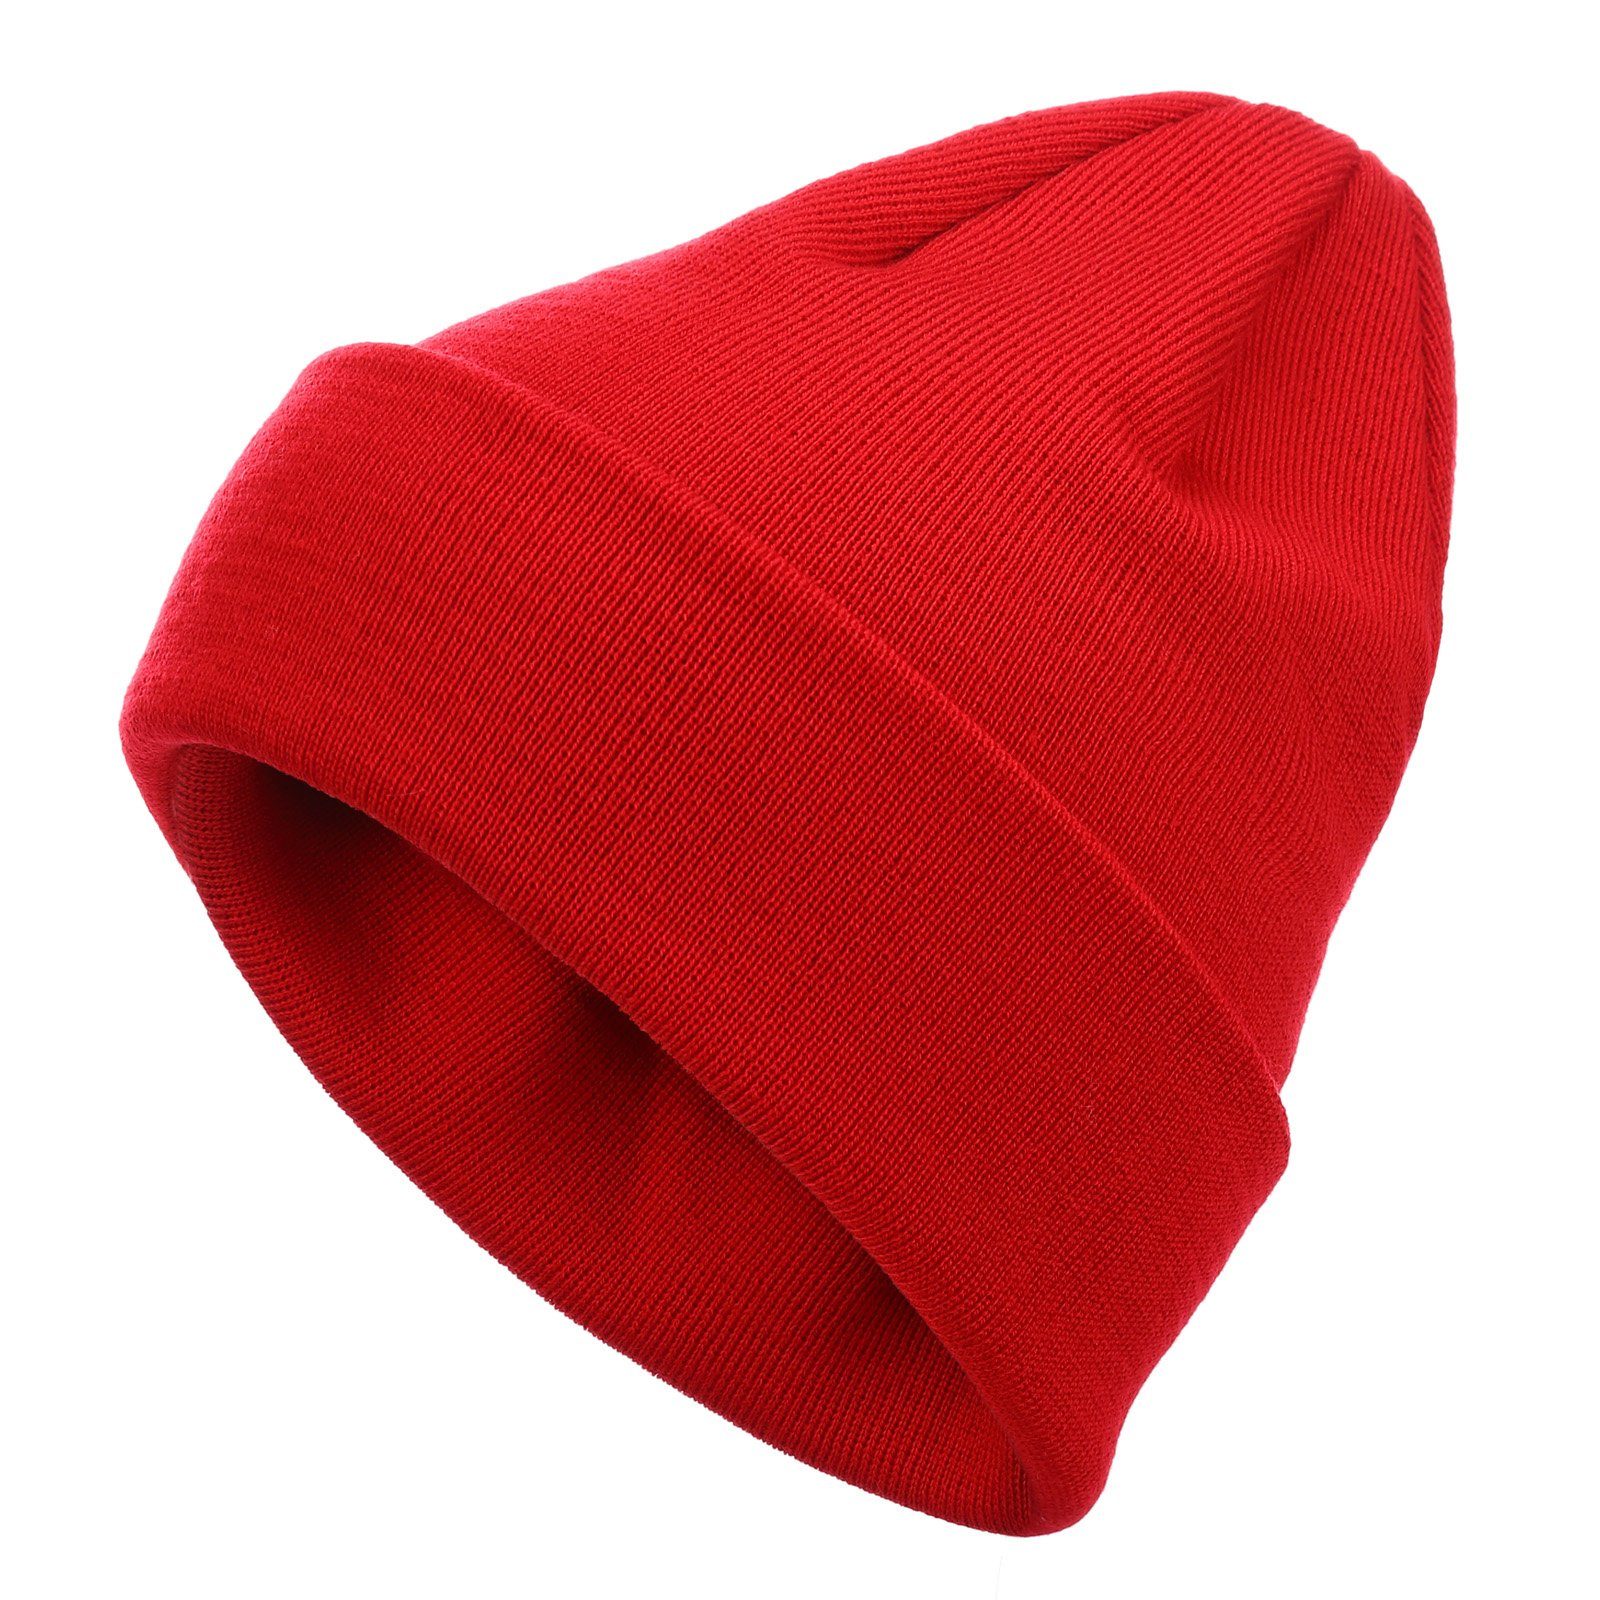 in (20) - Merinowolle rot Strickmütze doppellagiger modAS aus Unisex Mütze Wollmütze Qualität